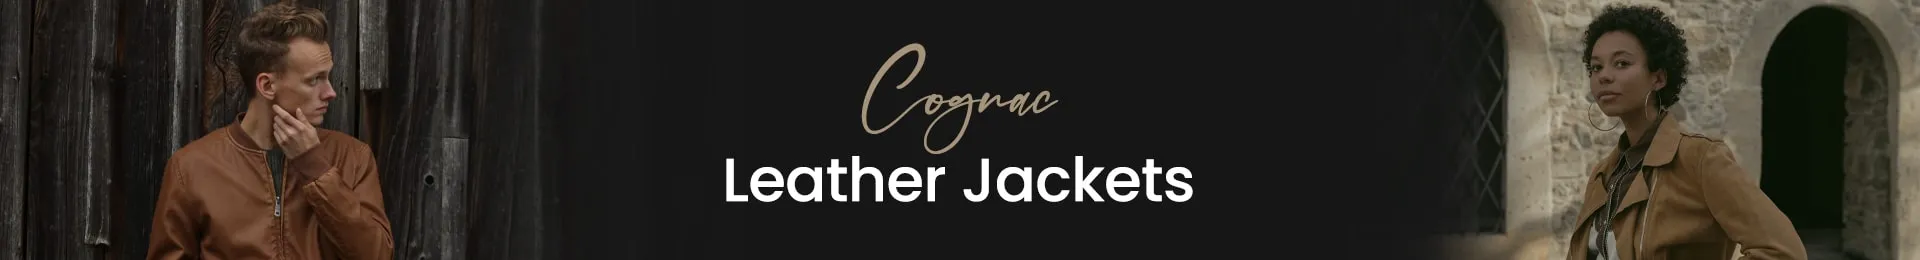 cognac leather jacket, cognac leather jacket mens, cognac leather jacket womens